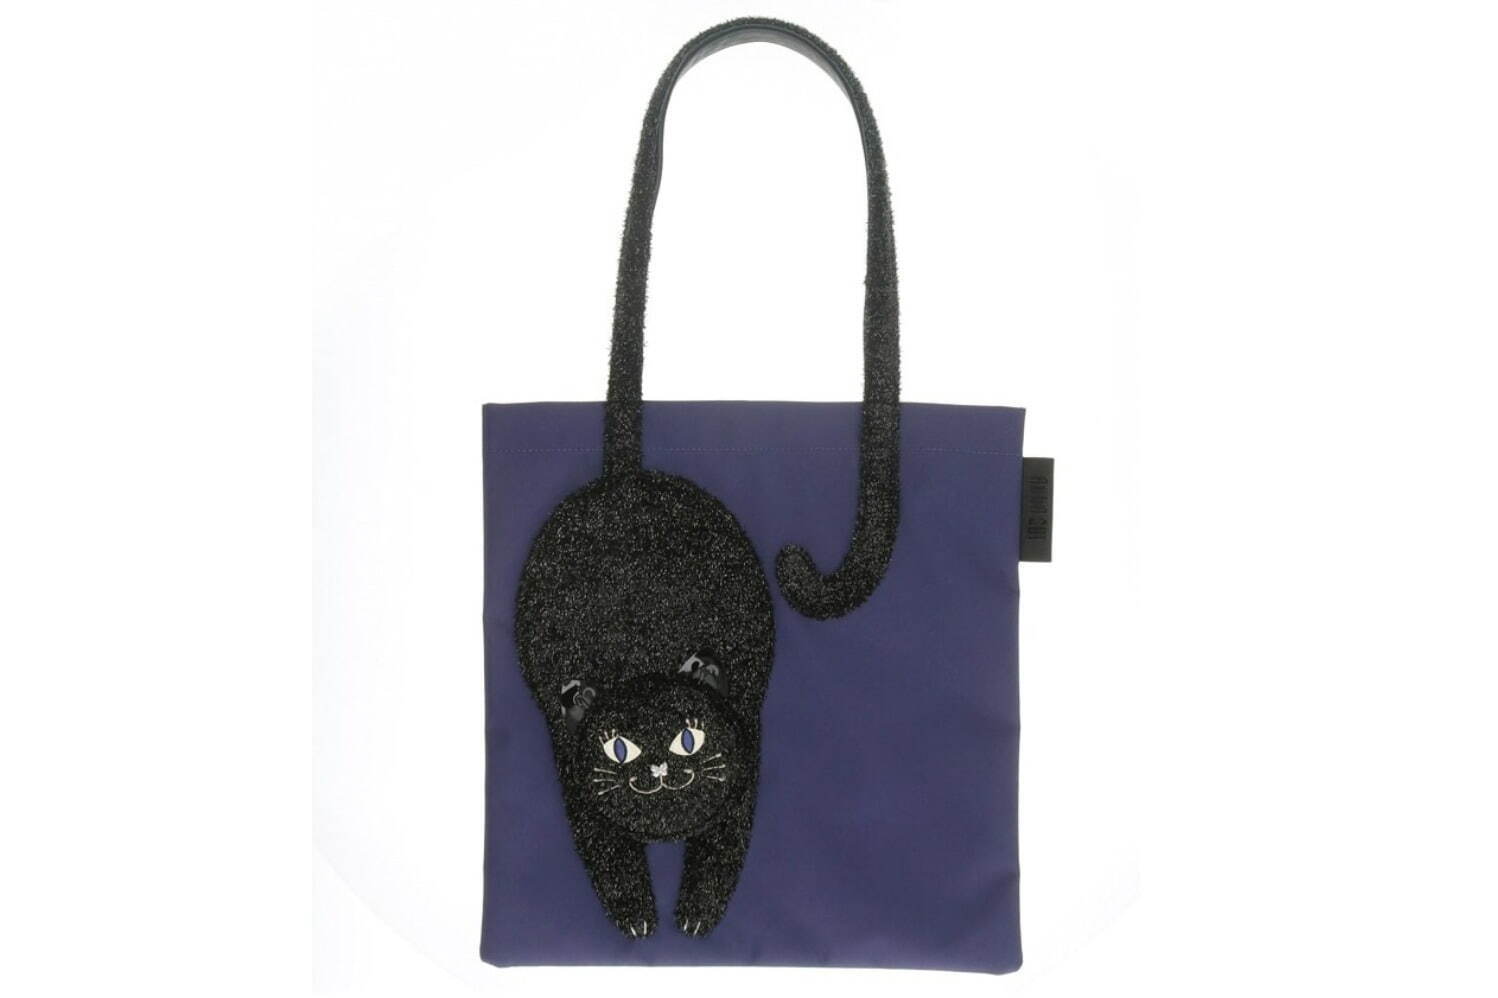 アナ スイ“黒猫のティティ”モチーフを配したミニショルダーバッグ